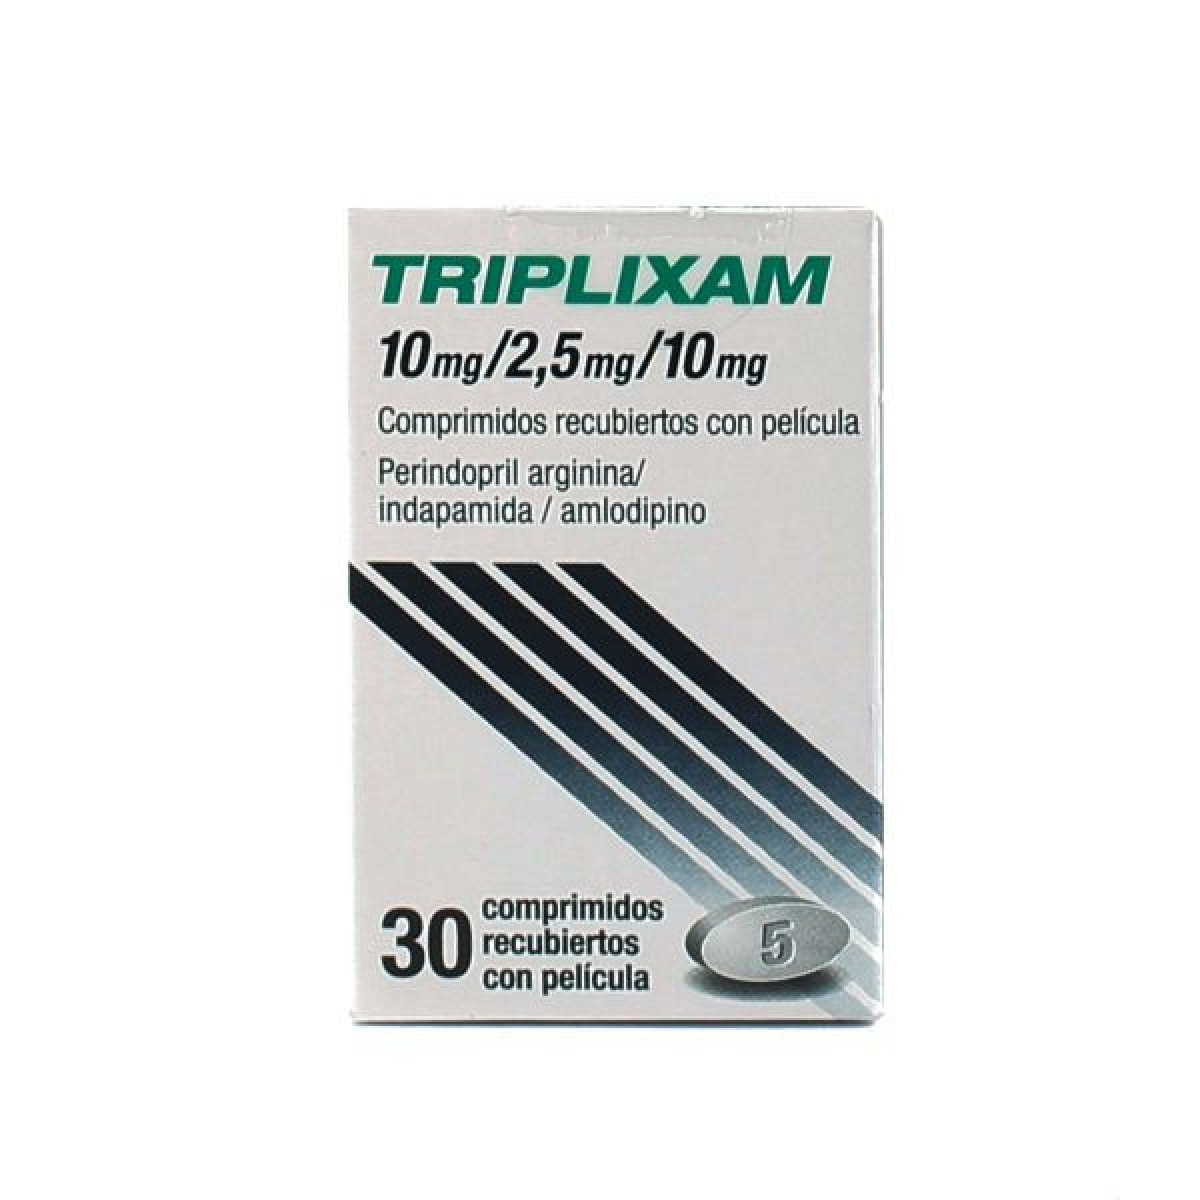 TRIPLIXAM 10/2.5/10MG X 30 COMP REC